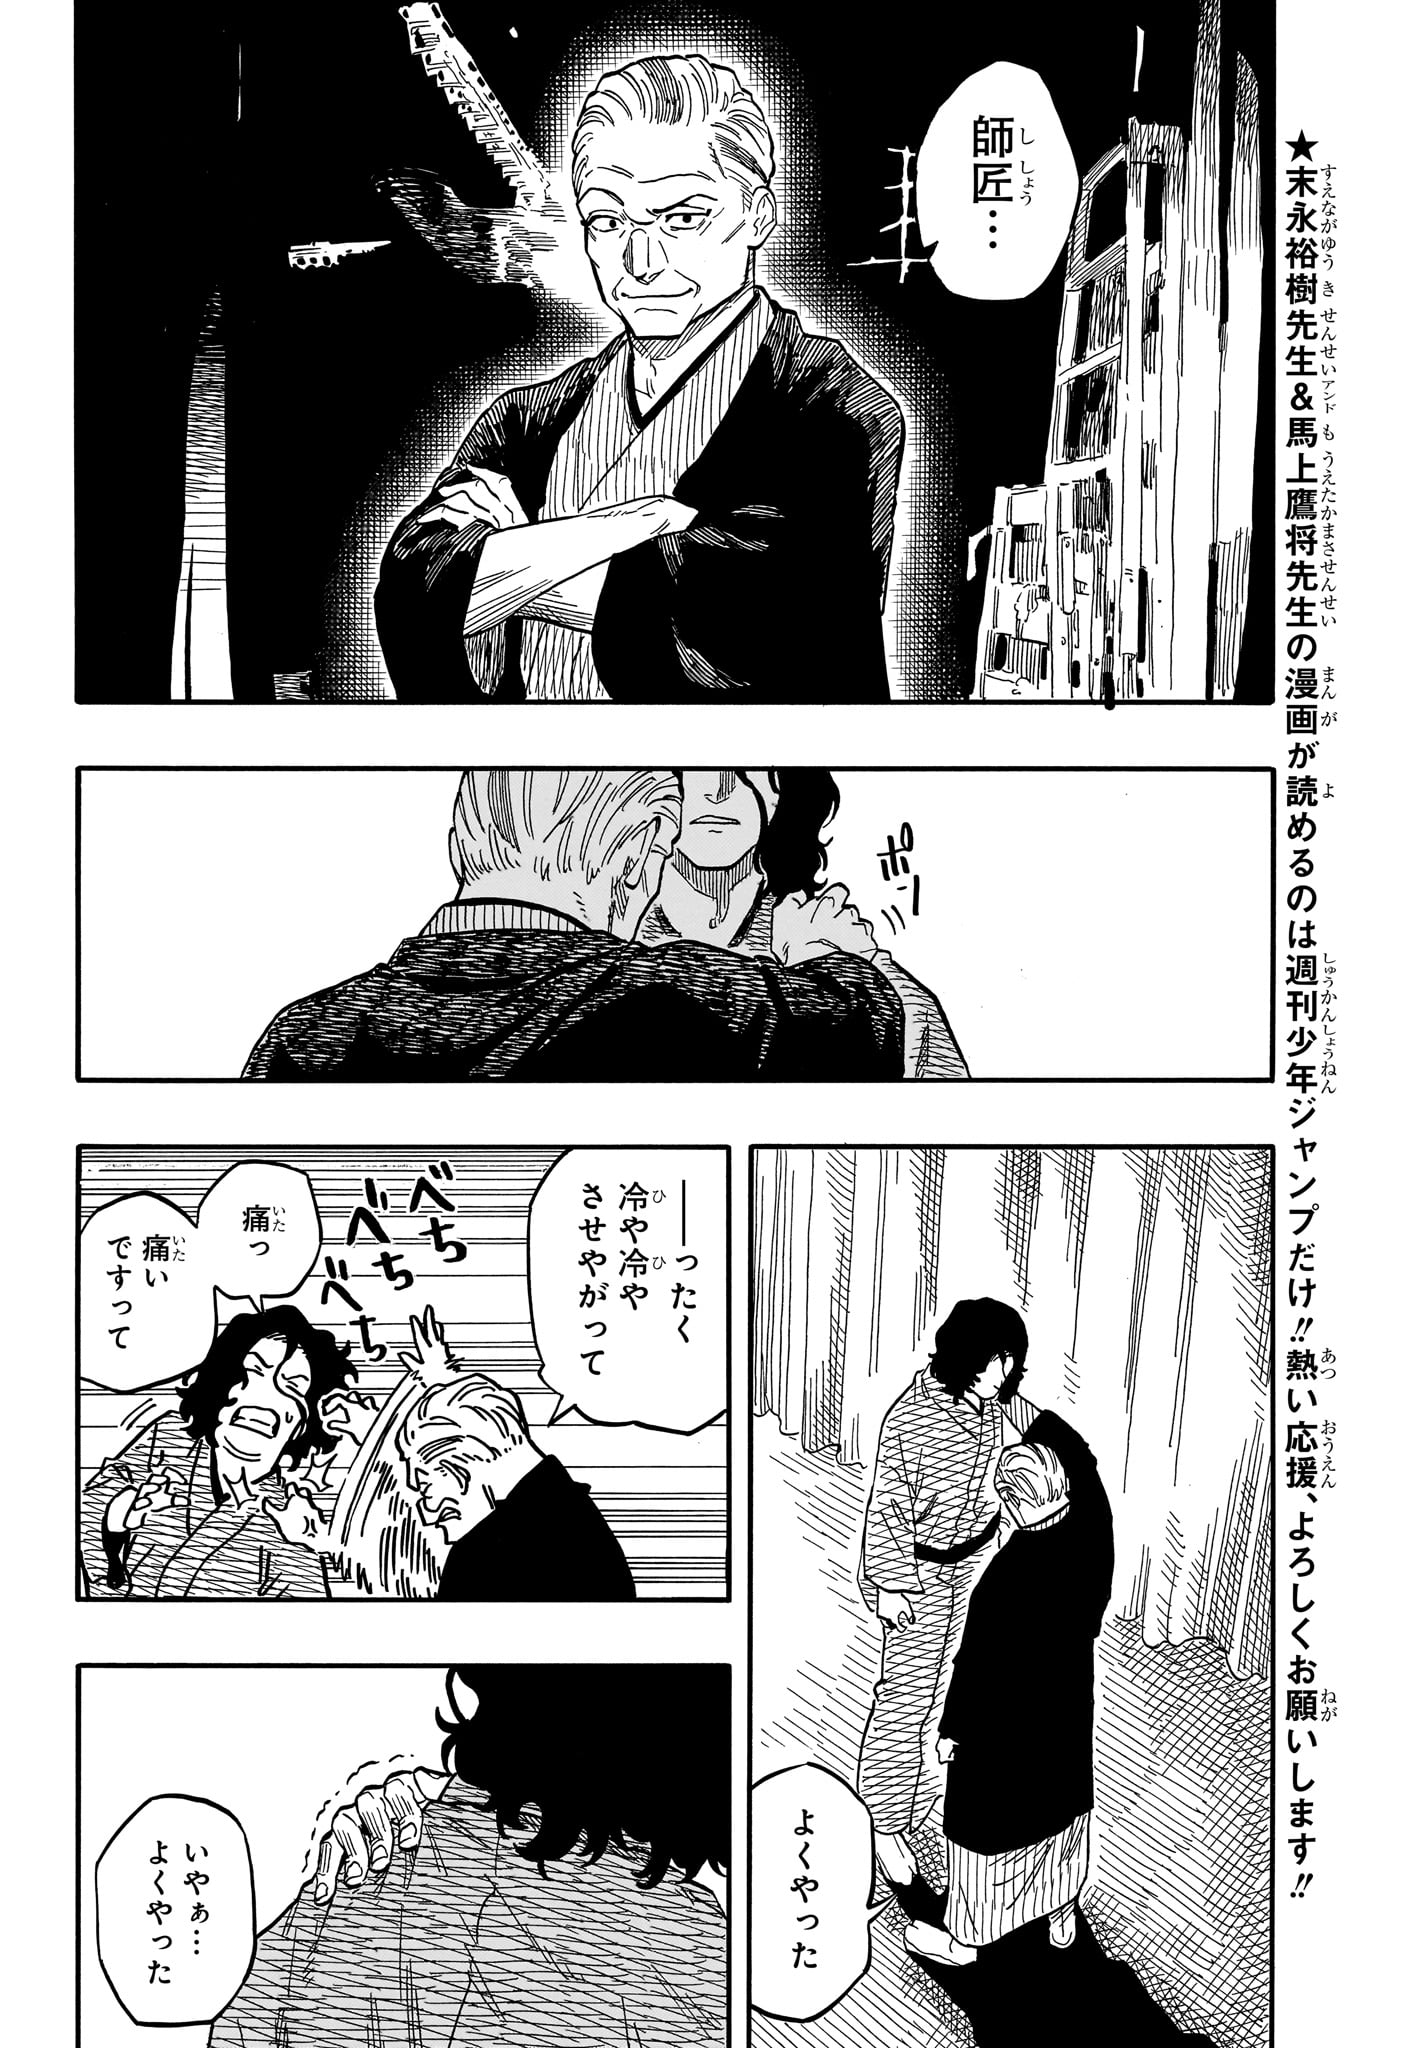 Akane-Banashi - Chapter 117 - Page 2